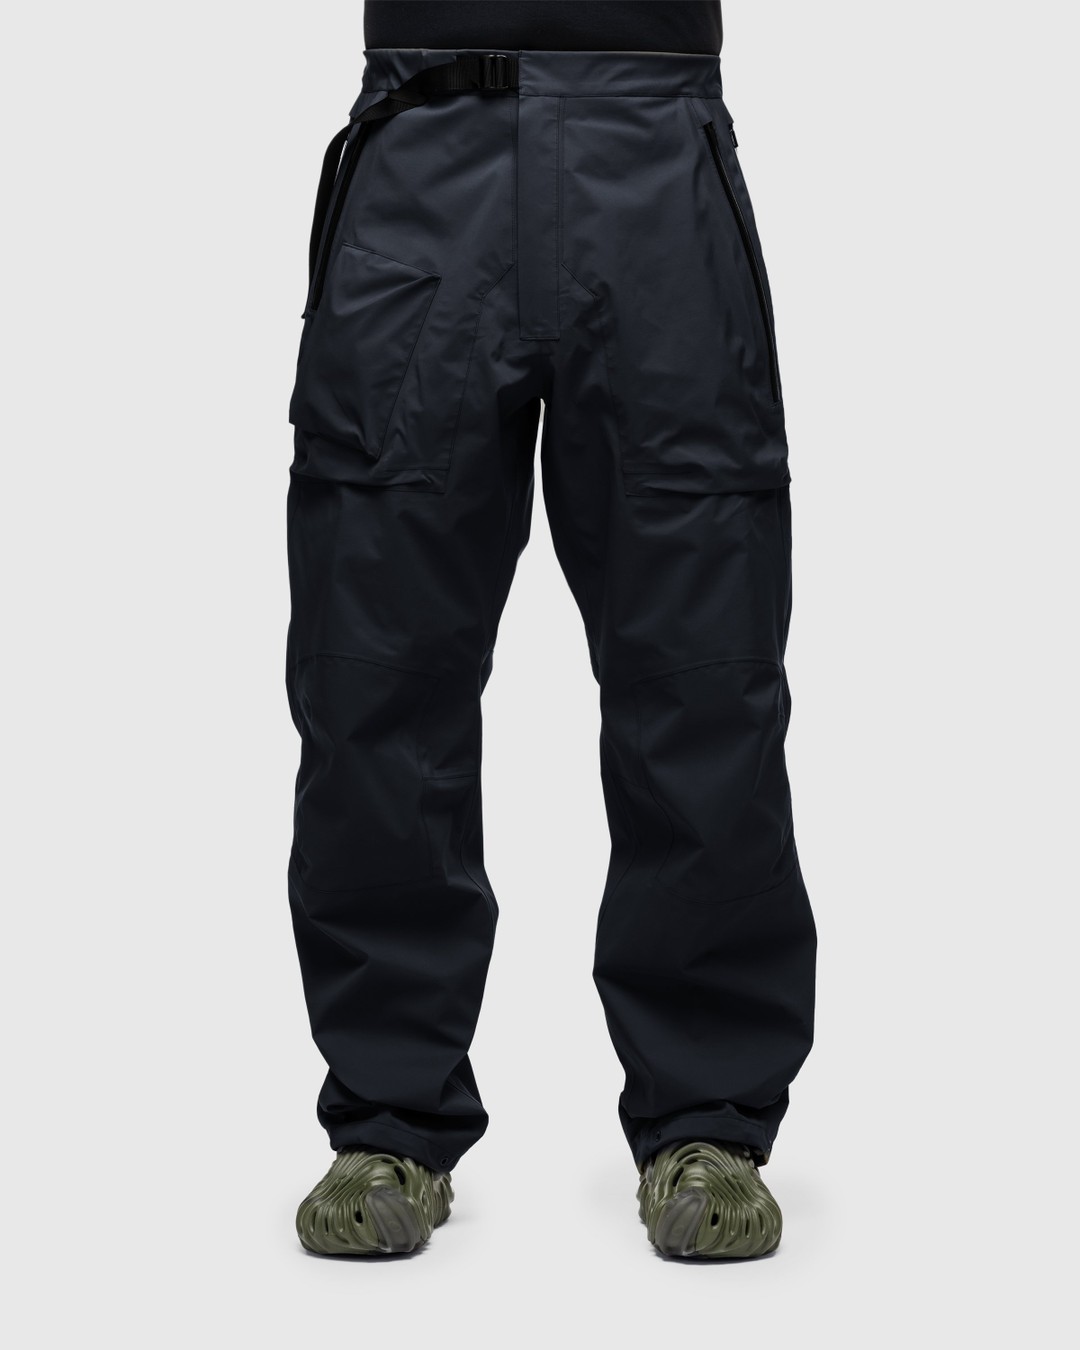 ACRONYM – P44-DS Cargo Pant Black - Pants - Black - Image 3